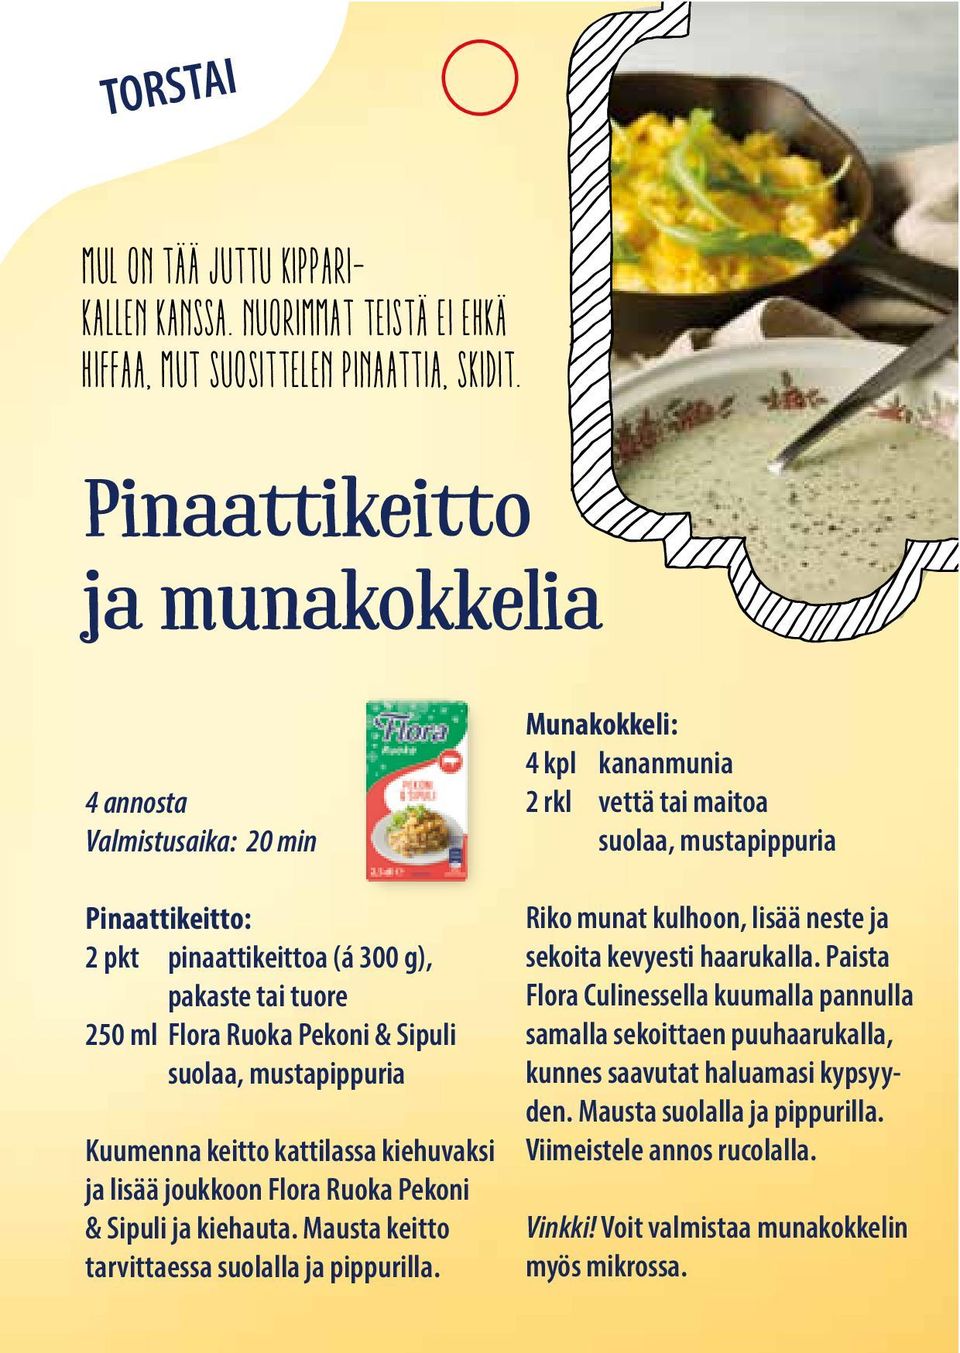 kattilassa kiehuvaksi ja lisää joukkoon Flora Ruoka Pekoni & Sipuli ja kiehauta. Mausta keitto tarvittaessa suolalla ja pippurilla.